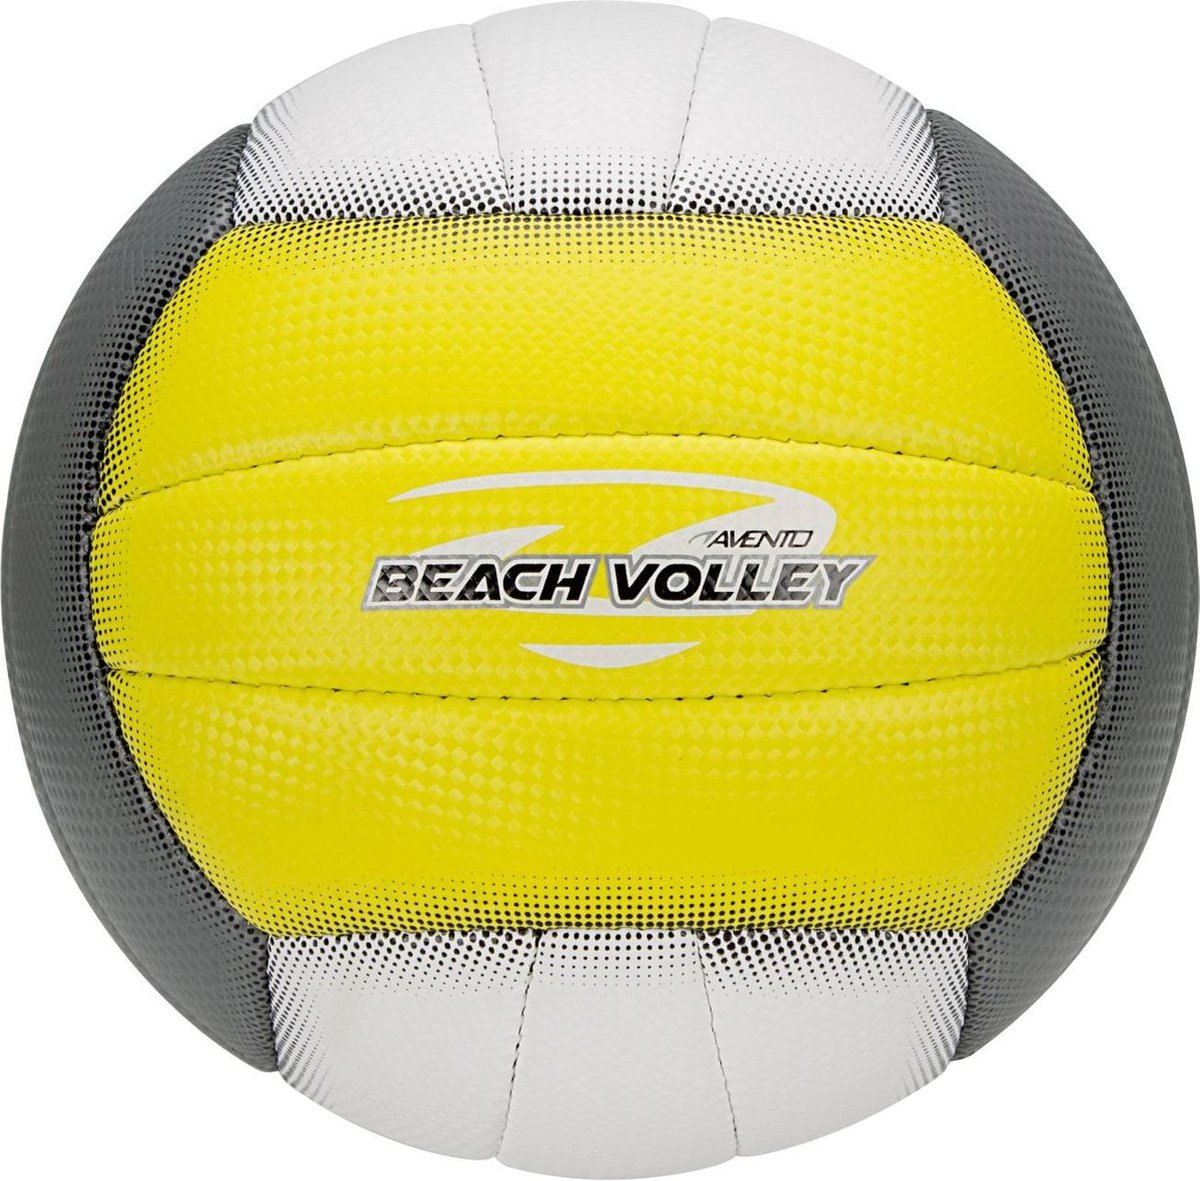 Billede af Avento Beach Volleyball Neongul/Grå/Hvid - Beachvolleyball i standard størrelse - HURTIG LEVERING